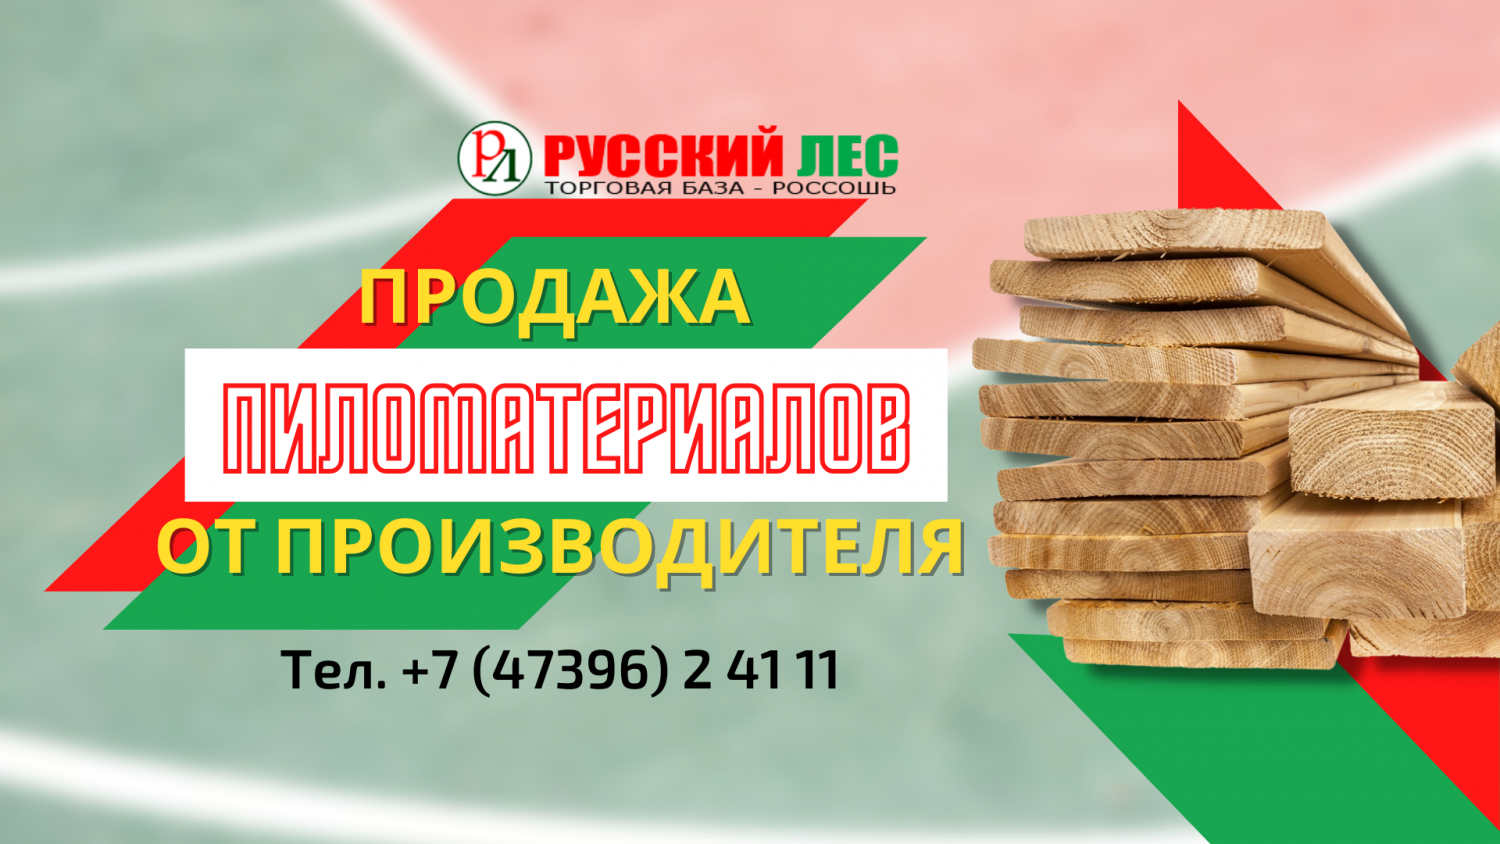 Торговая база Русский лес promo